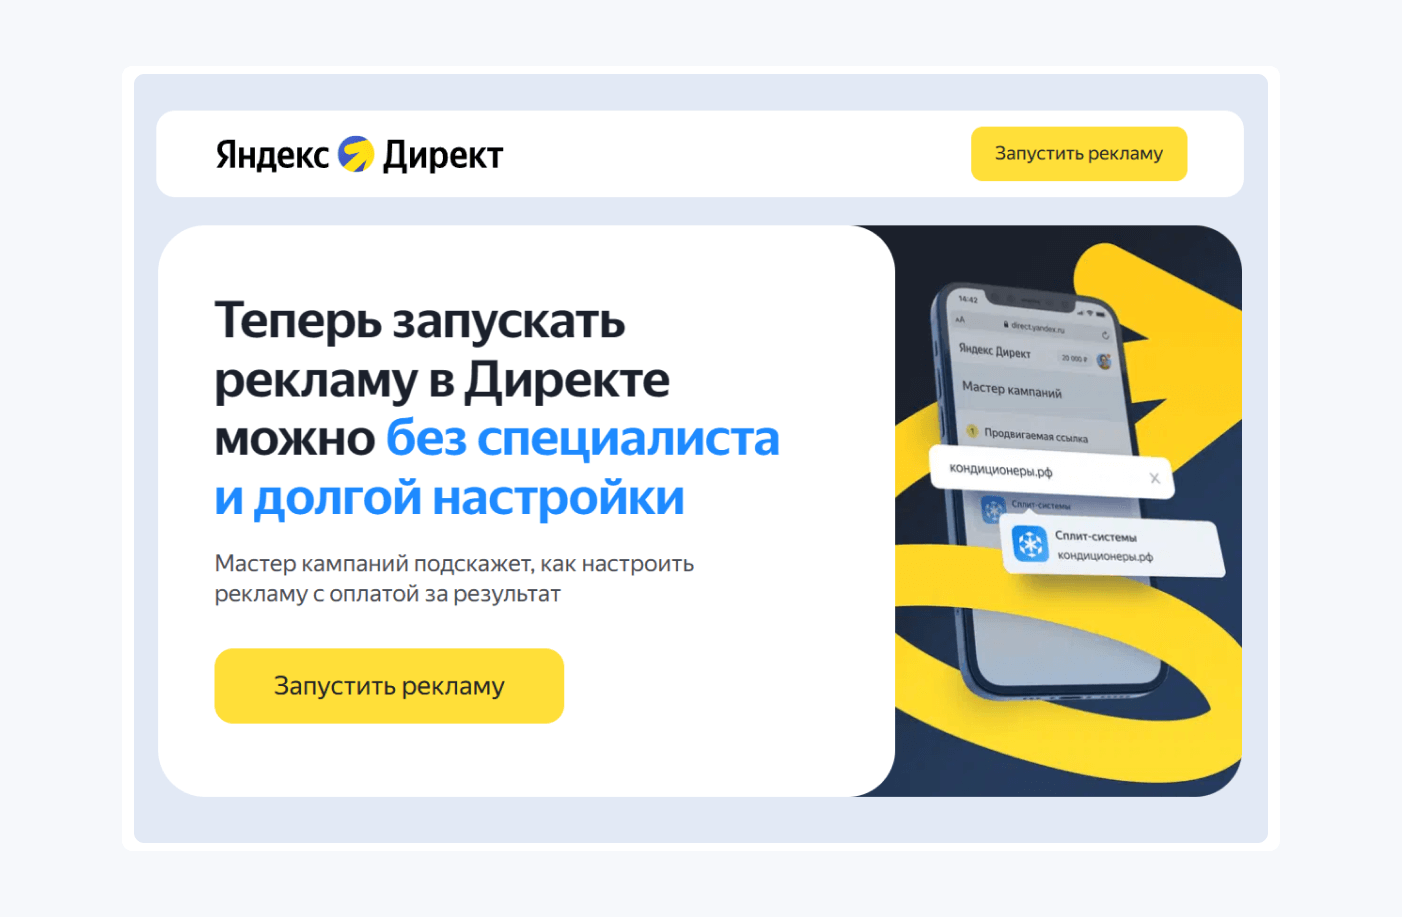 Лендинг Яндекс Директа